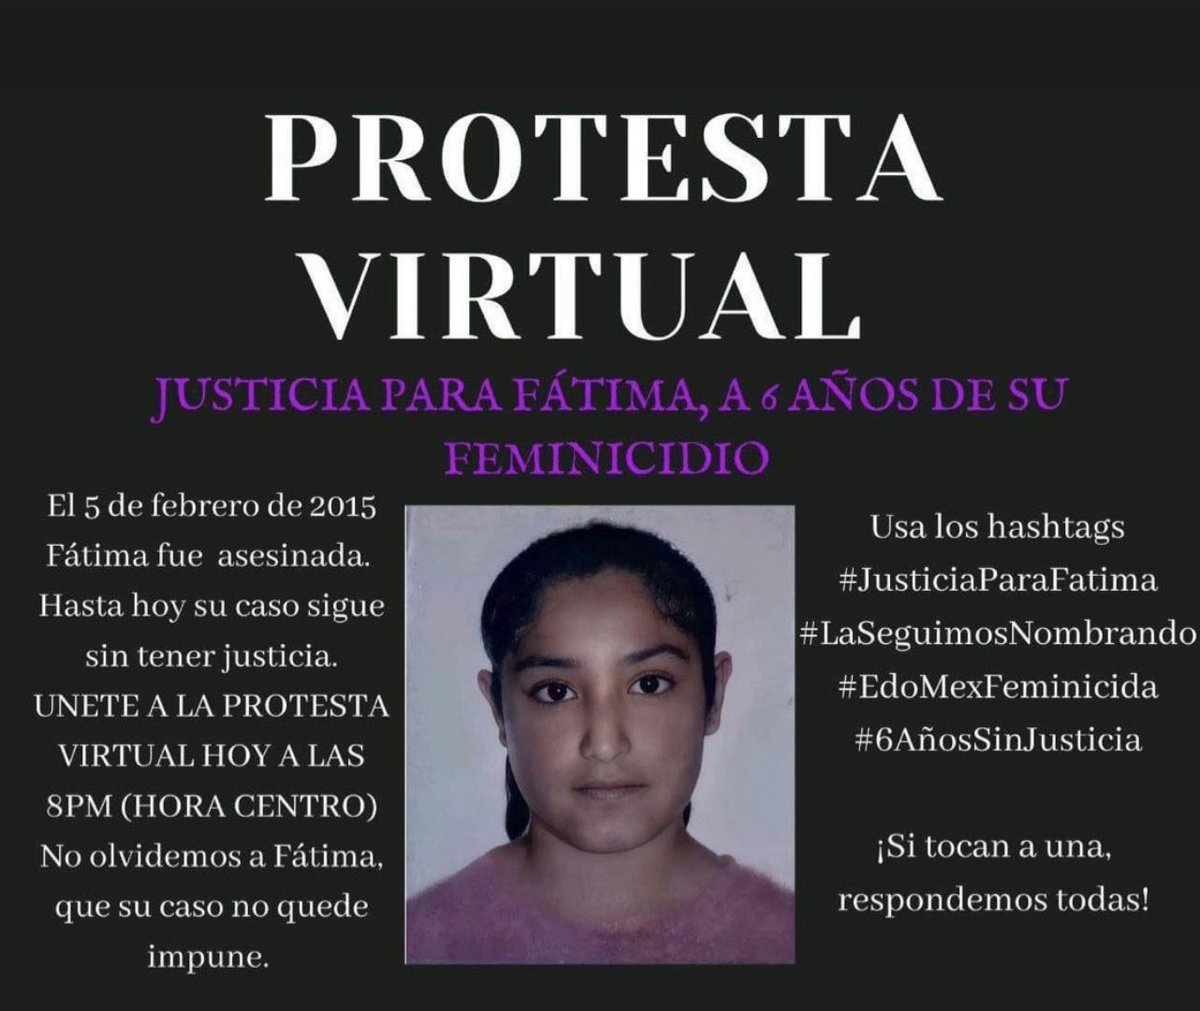 Si tocan a una, respondemos todas 💜 #JusticiaParaFatima #LaSeguimosNombrando #EdoMexFeminicida #6AñosSinJusticia